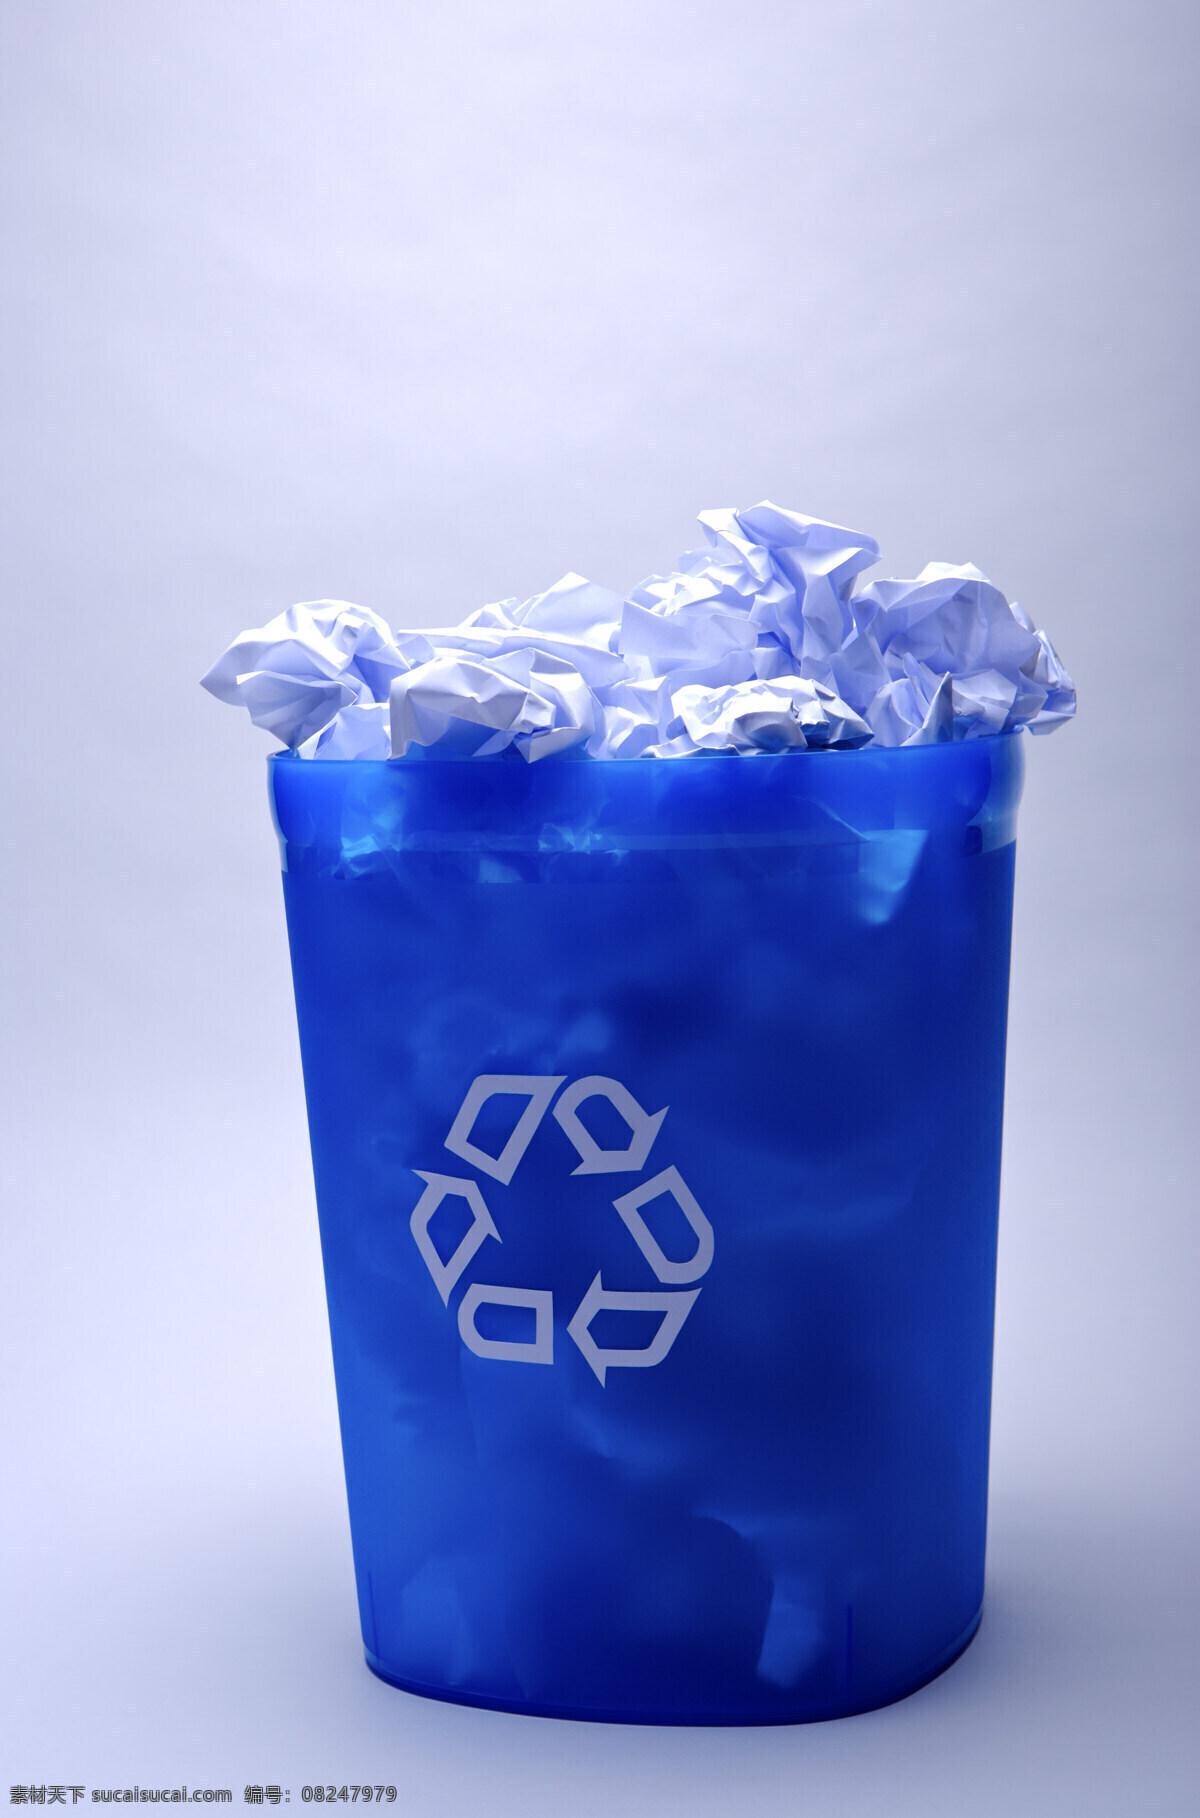 废旧 纸 团 利用 回收 标志 垃圾桶 垃圾 环保 公益广告 回收利用 可利用资源 高清图片 其他类别 生活百科